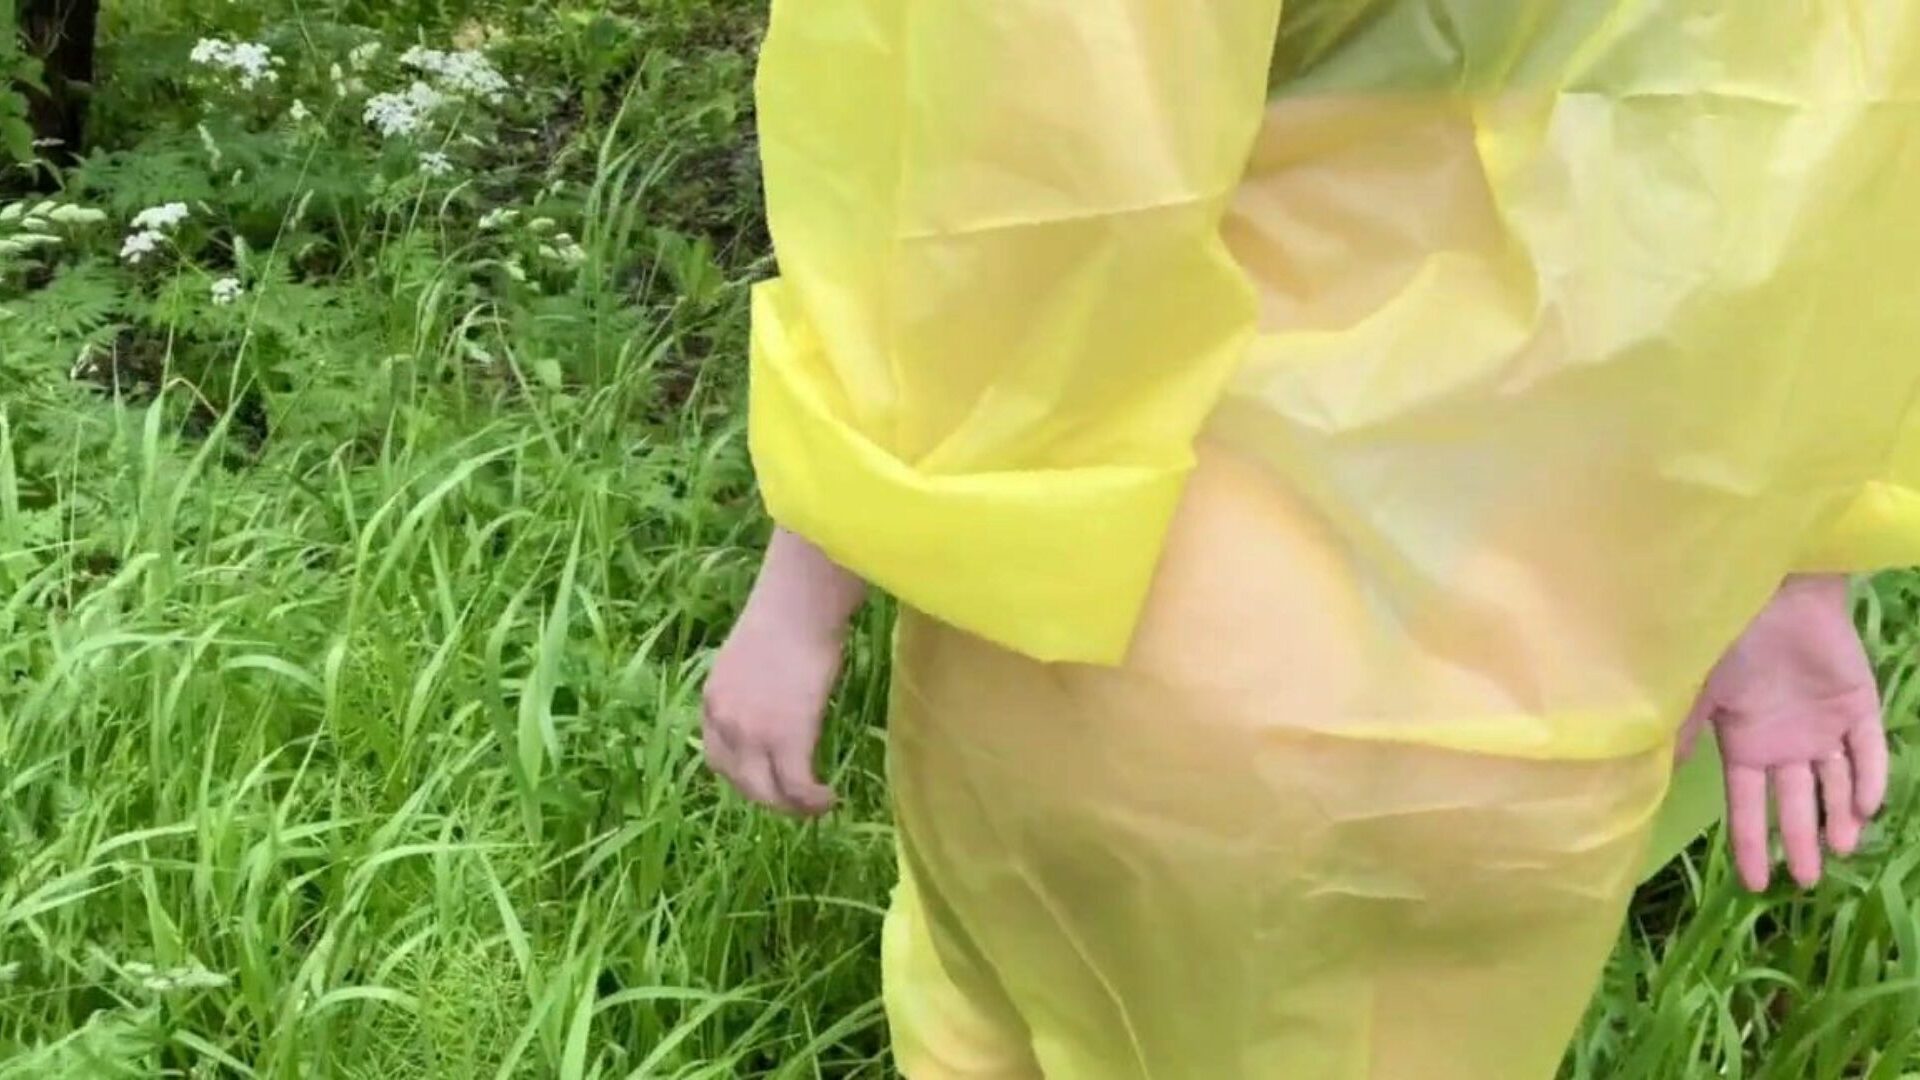 dziewczyna w płaszczu przeciwdeszczowym zostaje zerżnięta w lesie po deszczu